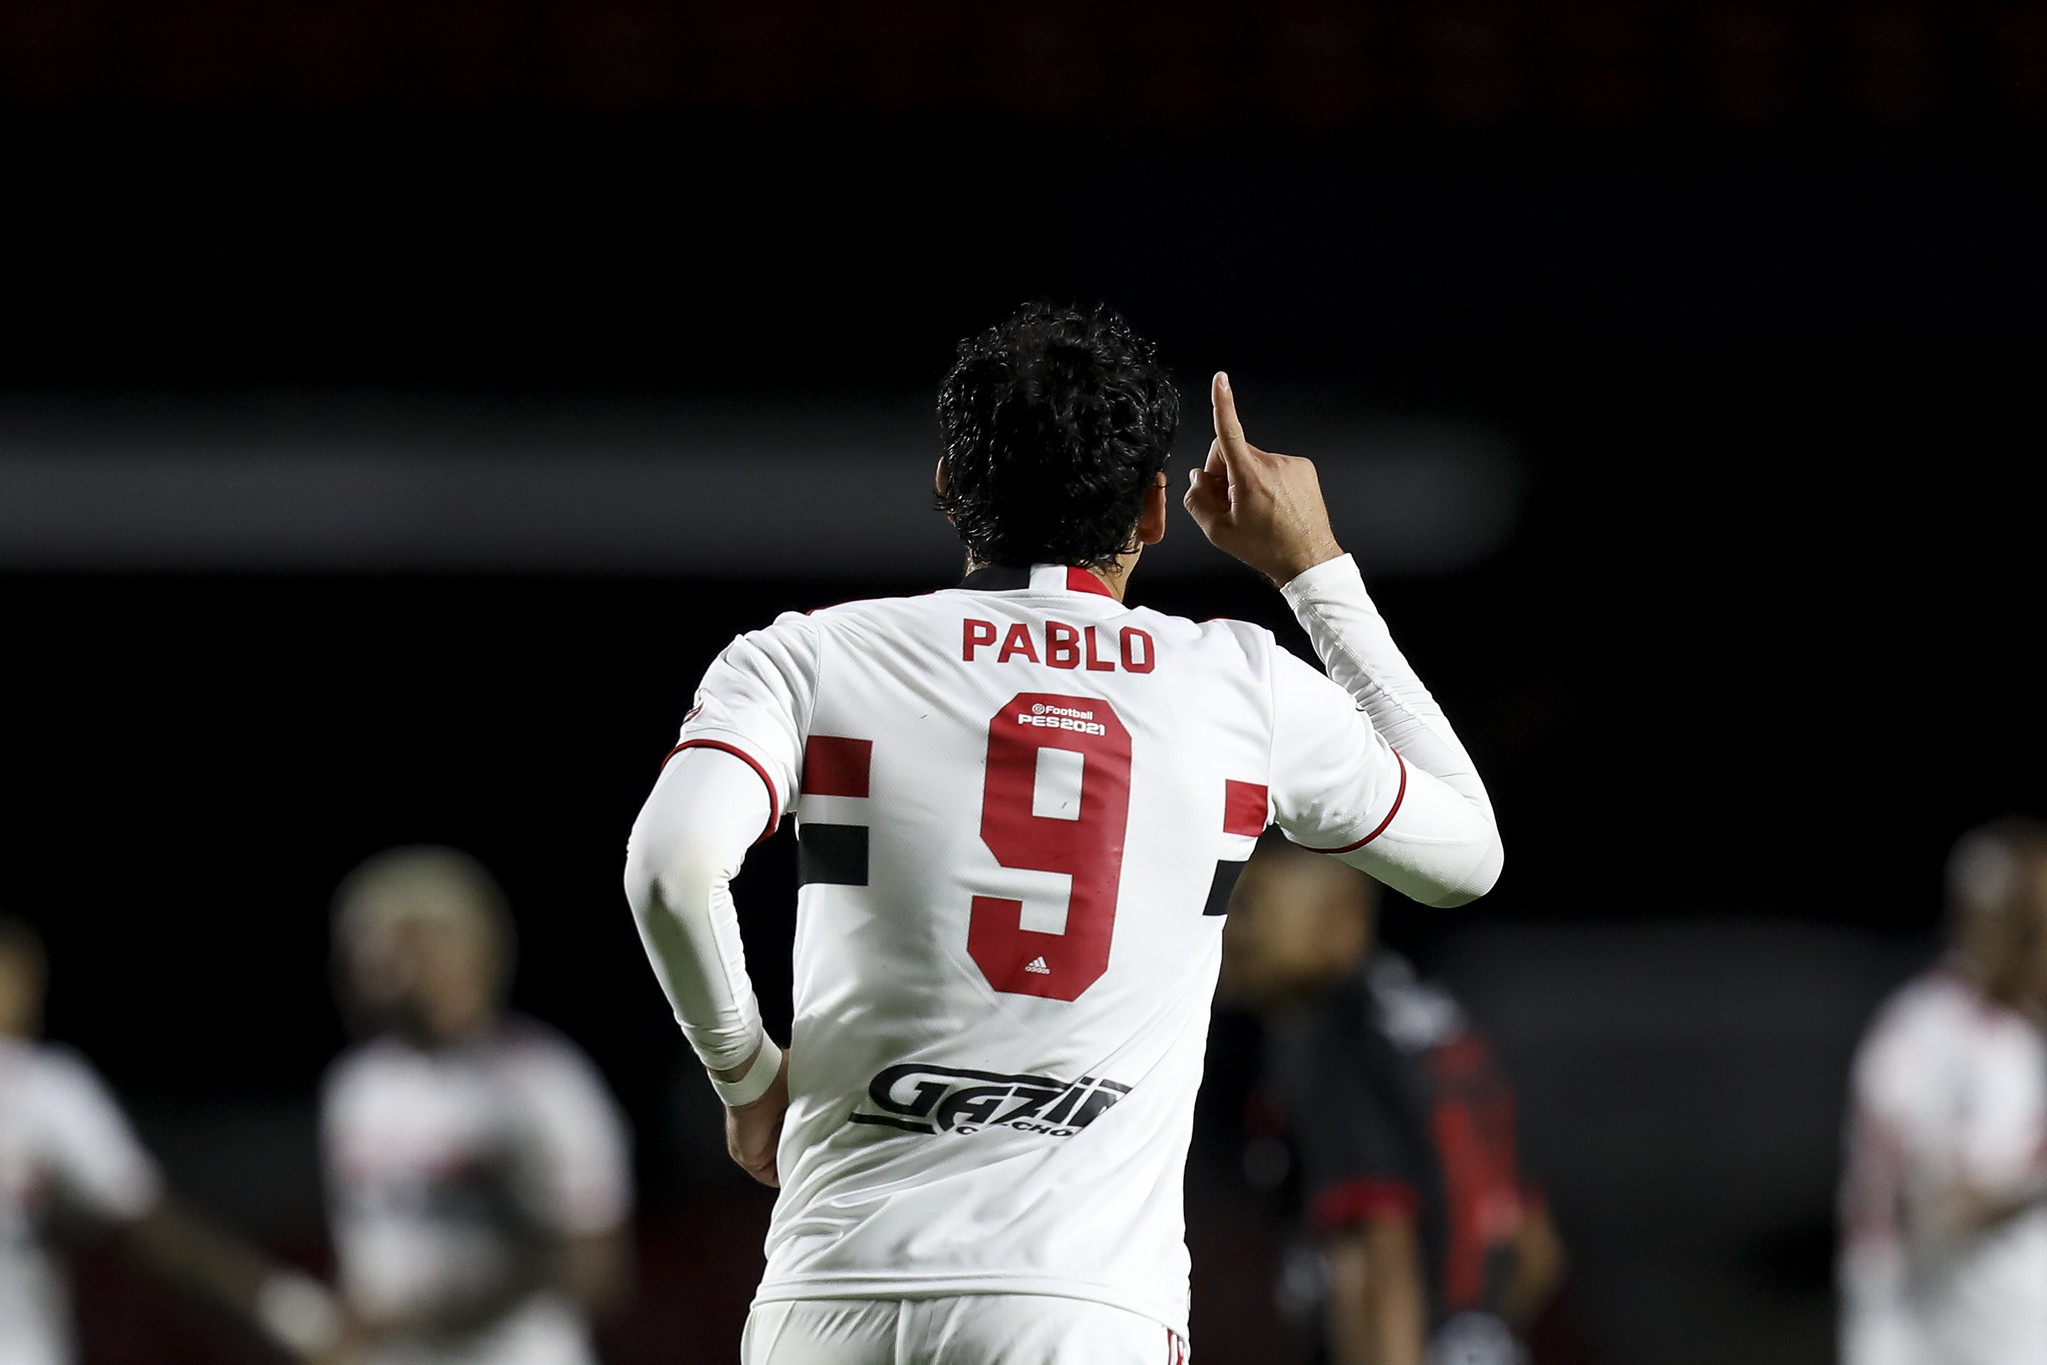 Pablo comemora sequência da equipe e fala sobre seu momento ‘Crespo me encorajou a ser o Pablo do Athletico PR’